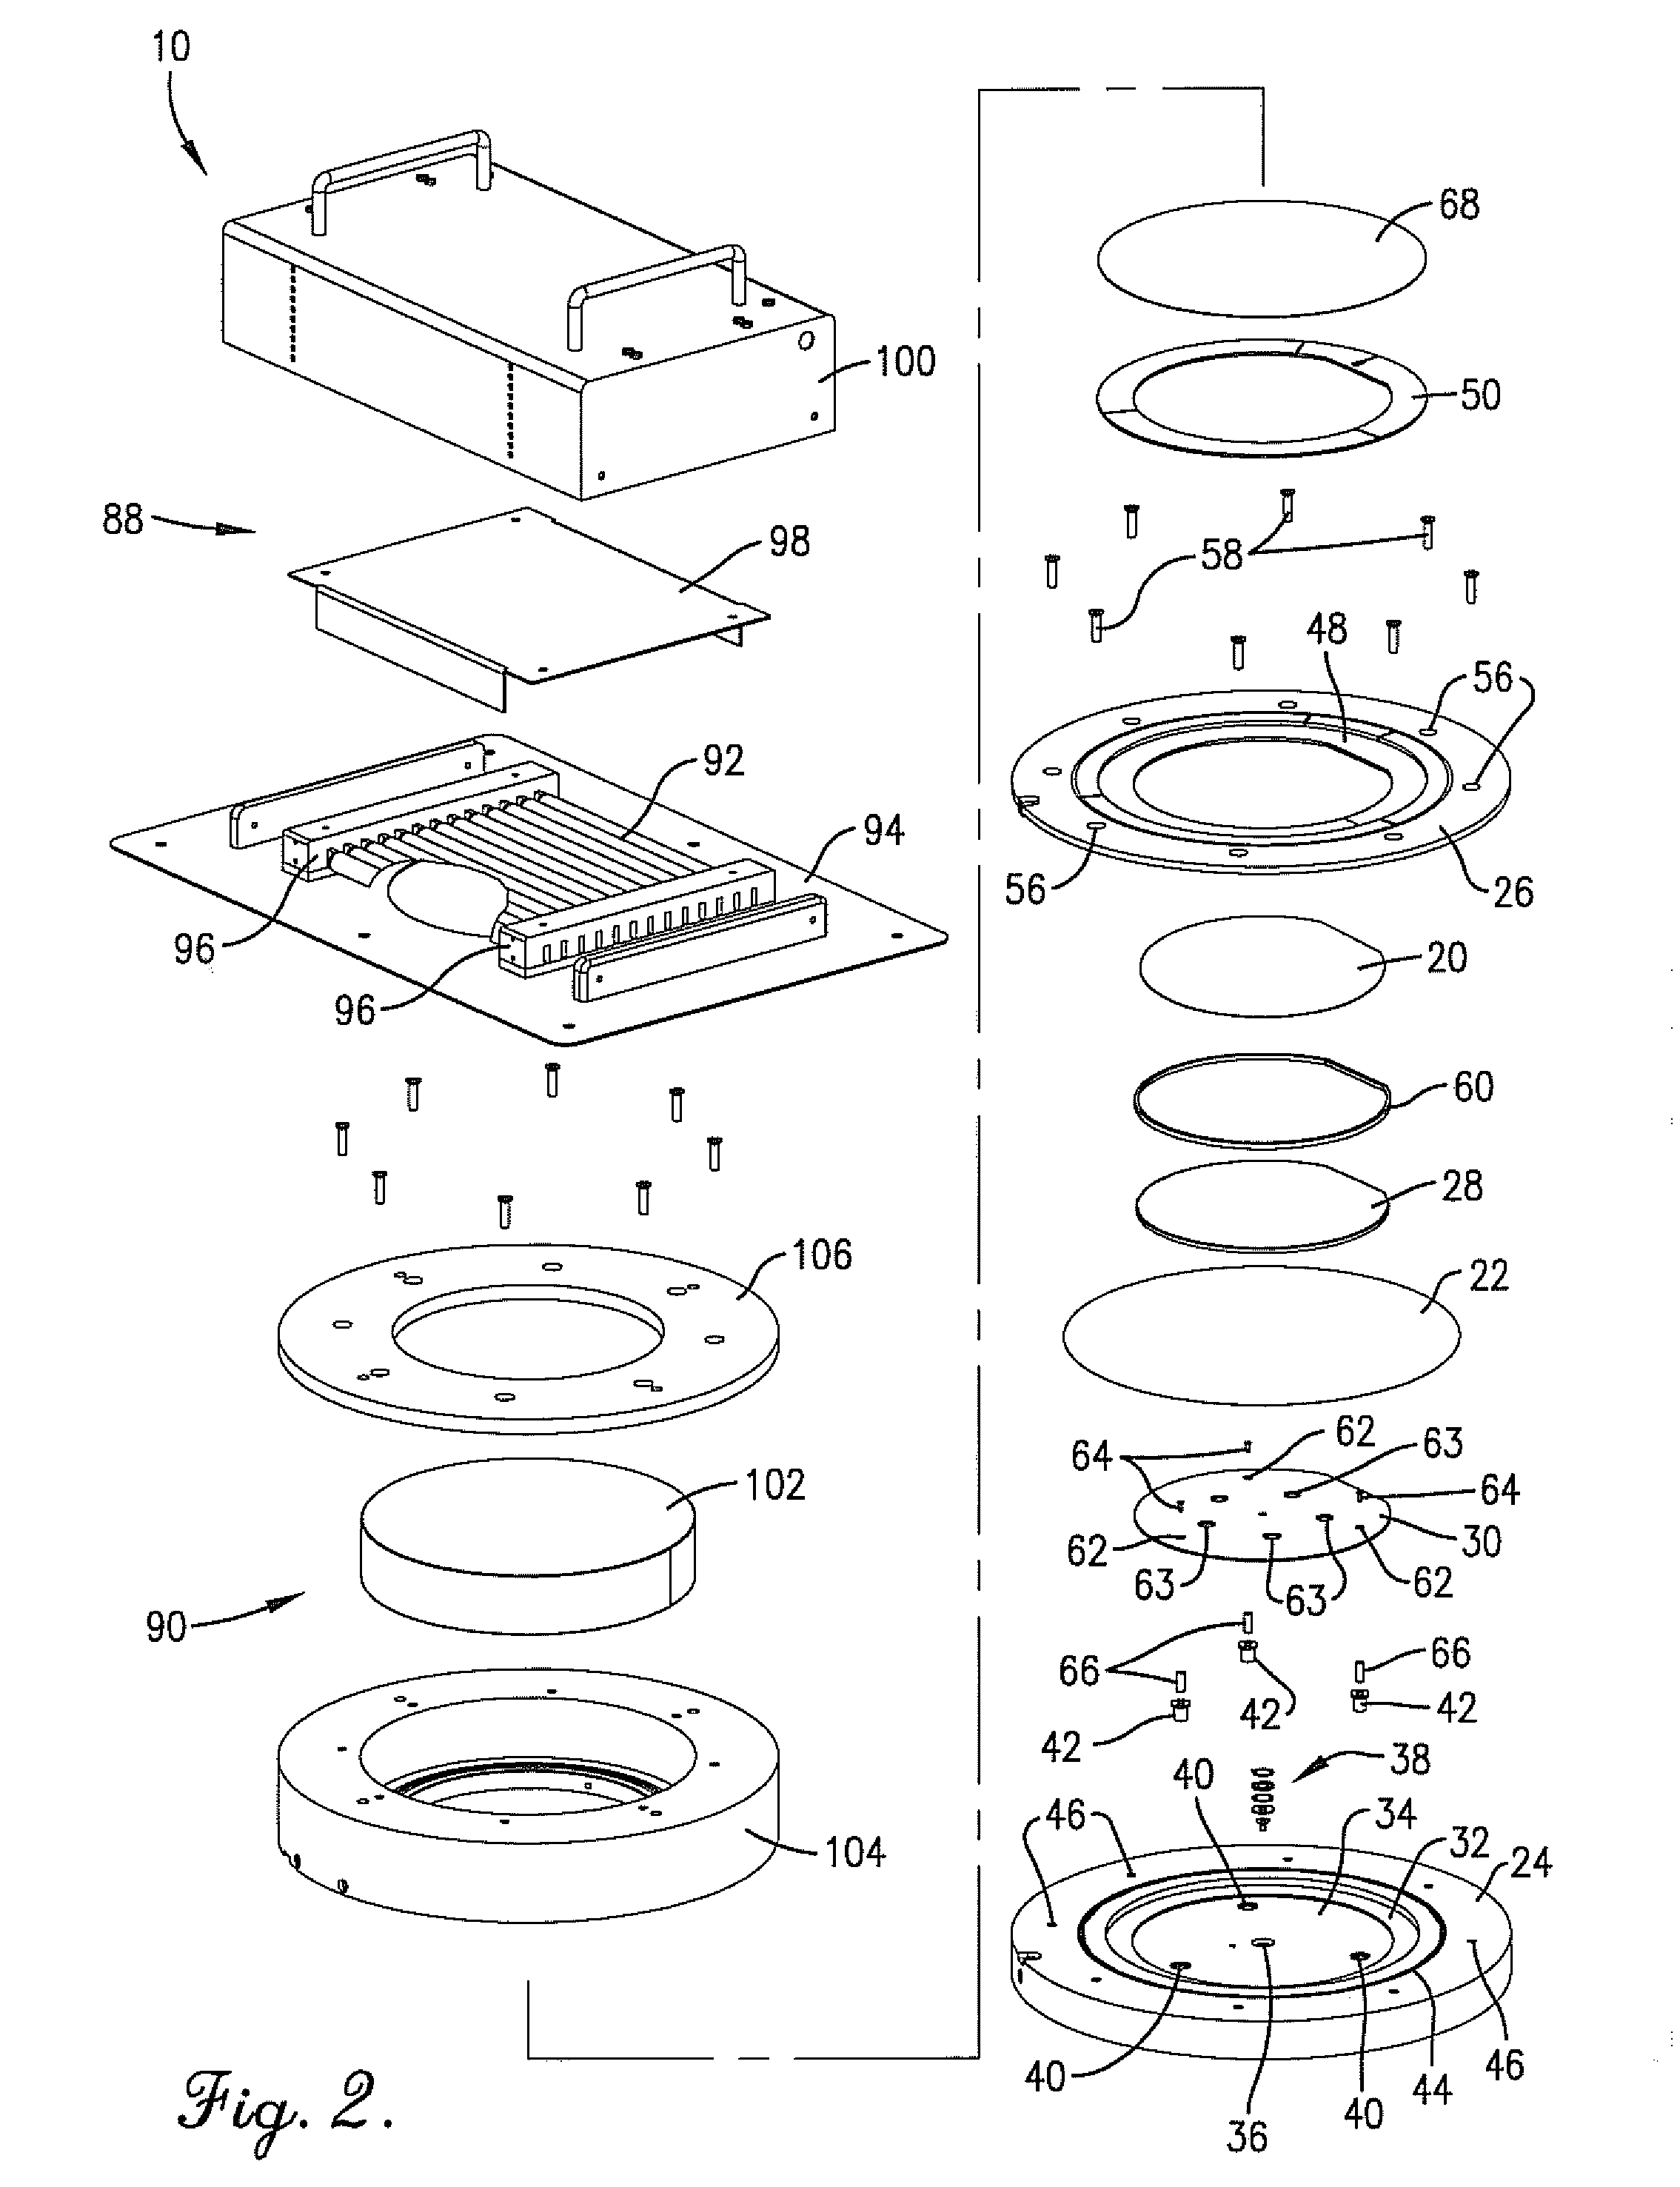 Contact planarization apparatus